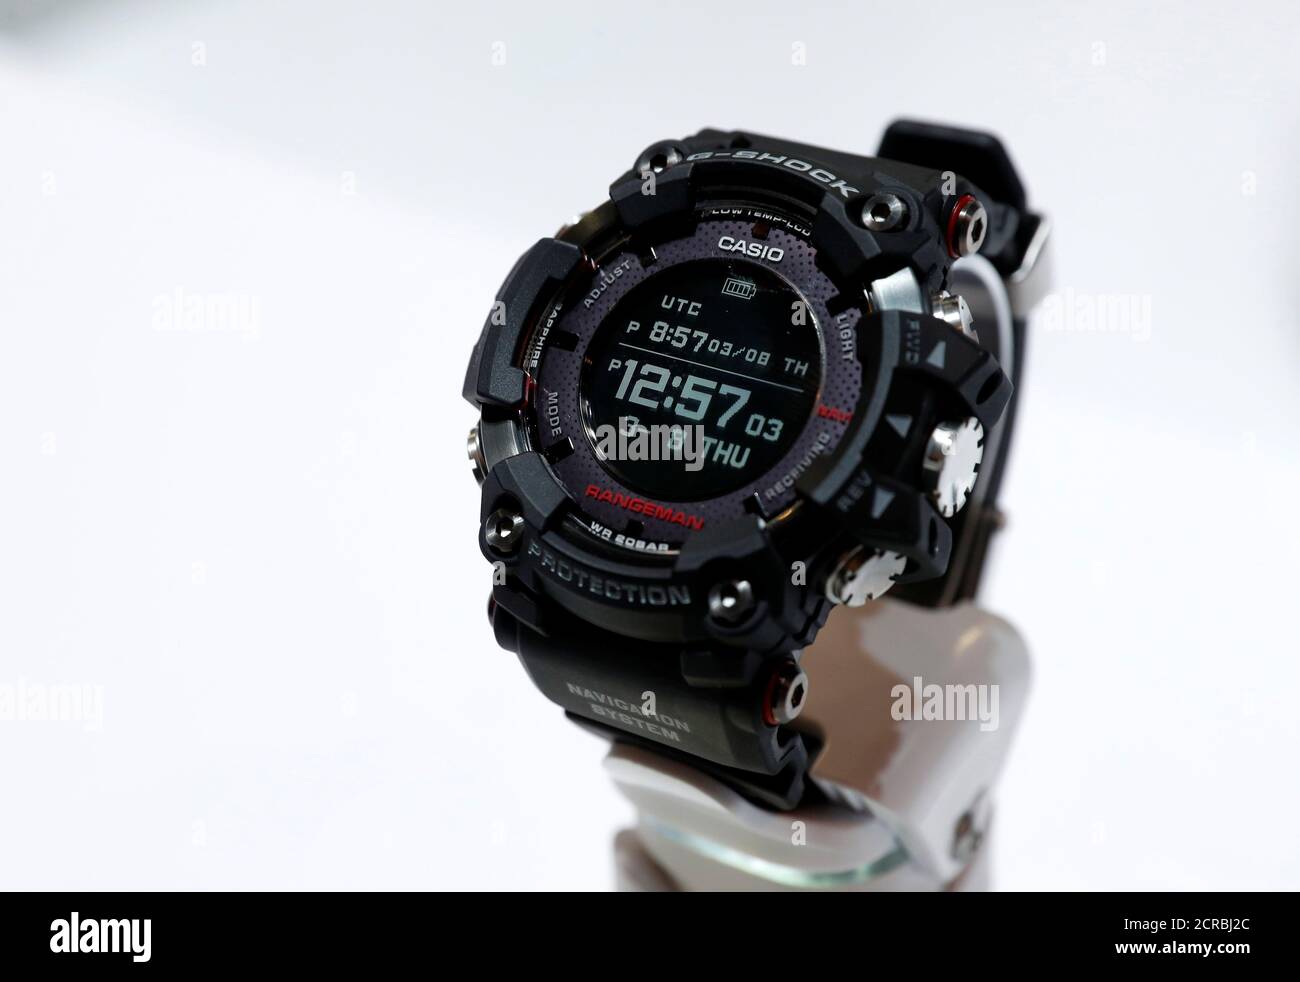 El Casio G-Shock Rangeman, un reloj con energía solar y navegación GPS,  durante el CES 2018 en las Vegas, Nevada, EE.UU. 10 de enero de 2018.  REUTERS/Steve Marcus Fotografía de stock -